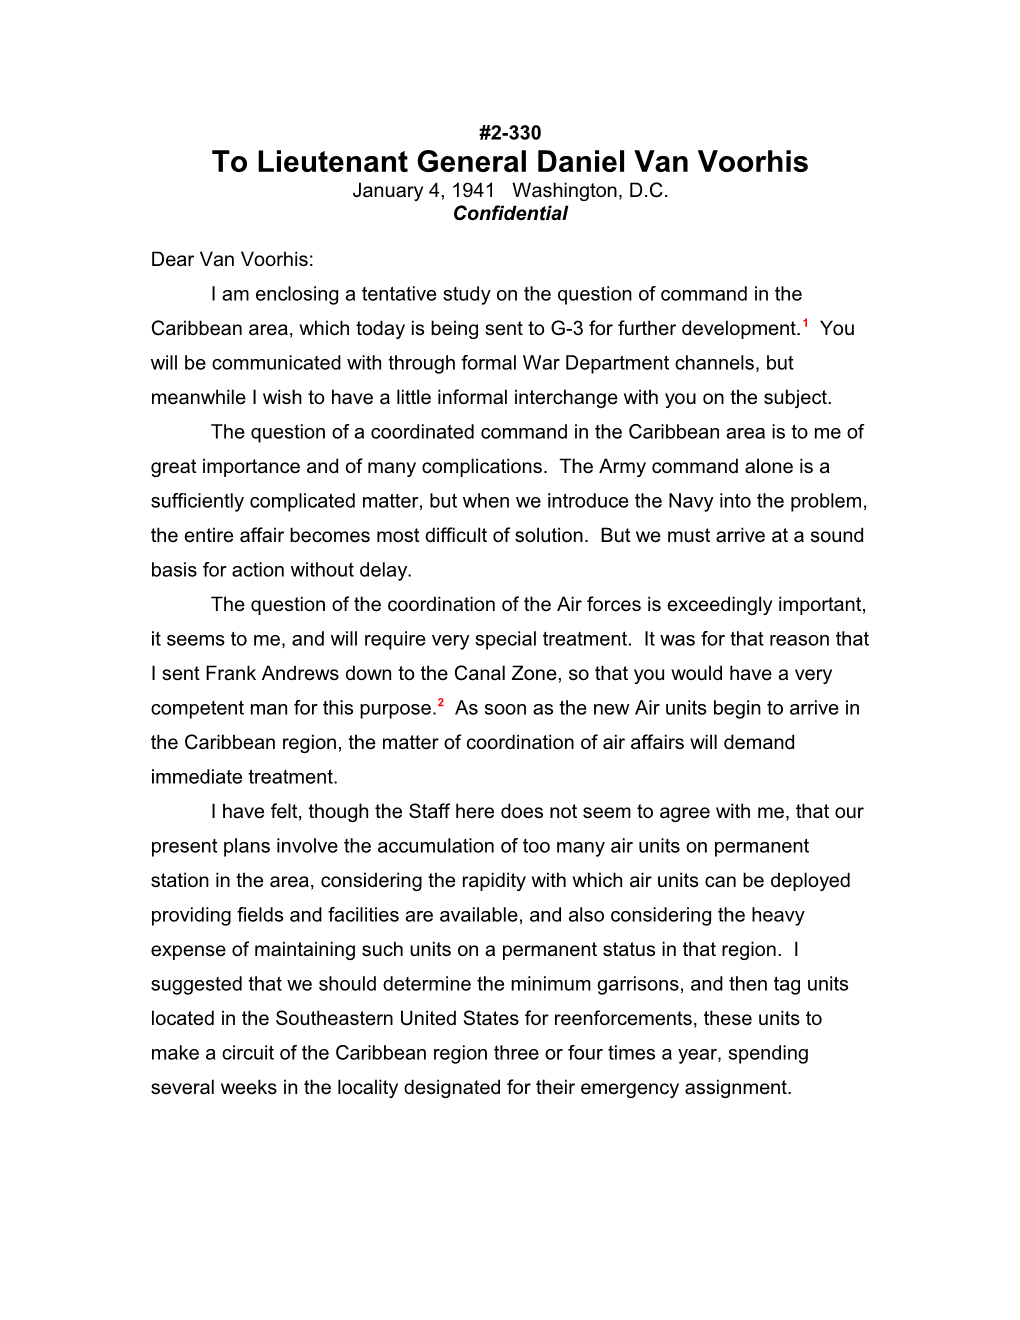 To Lieutenant General Daniel Van Voorhis